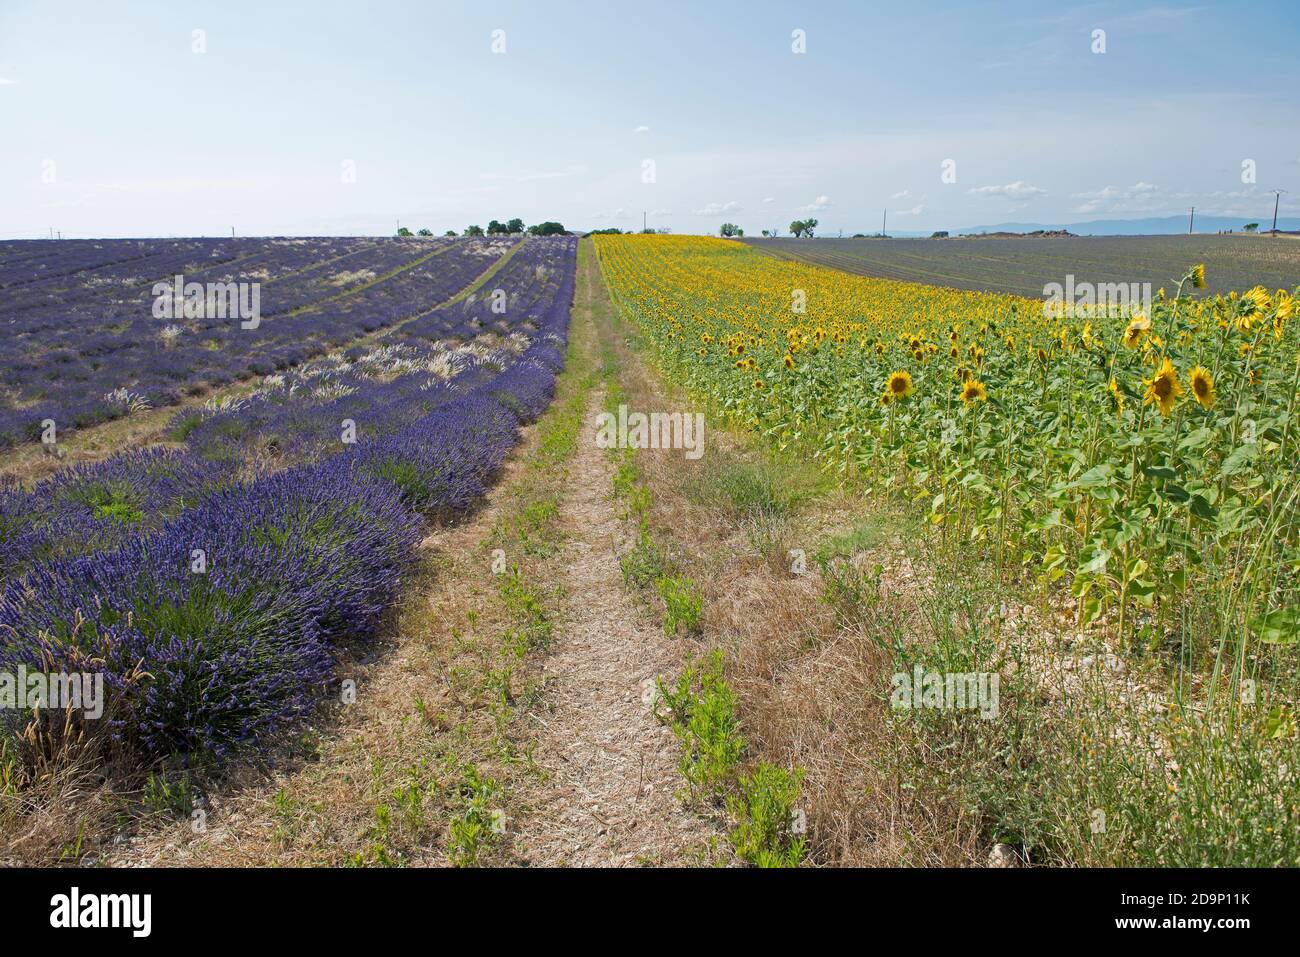 France, Alpes de Haute Provence, Plateau de Valensole, lavender fields (Lavandula sp.) and sunflower fields Stock Photo